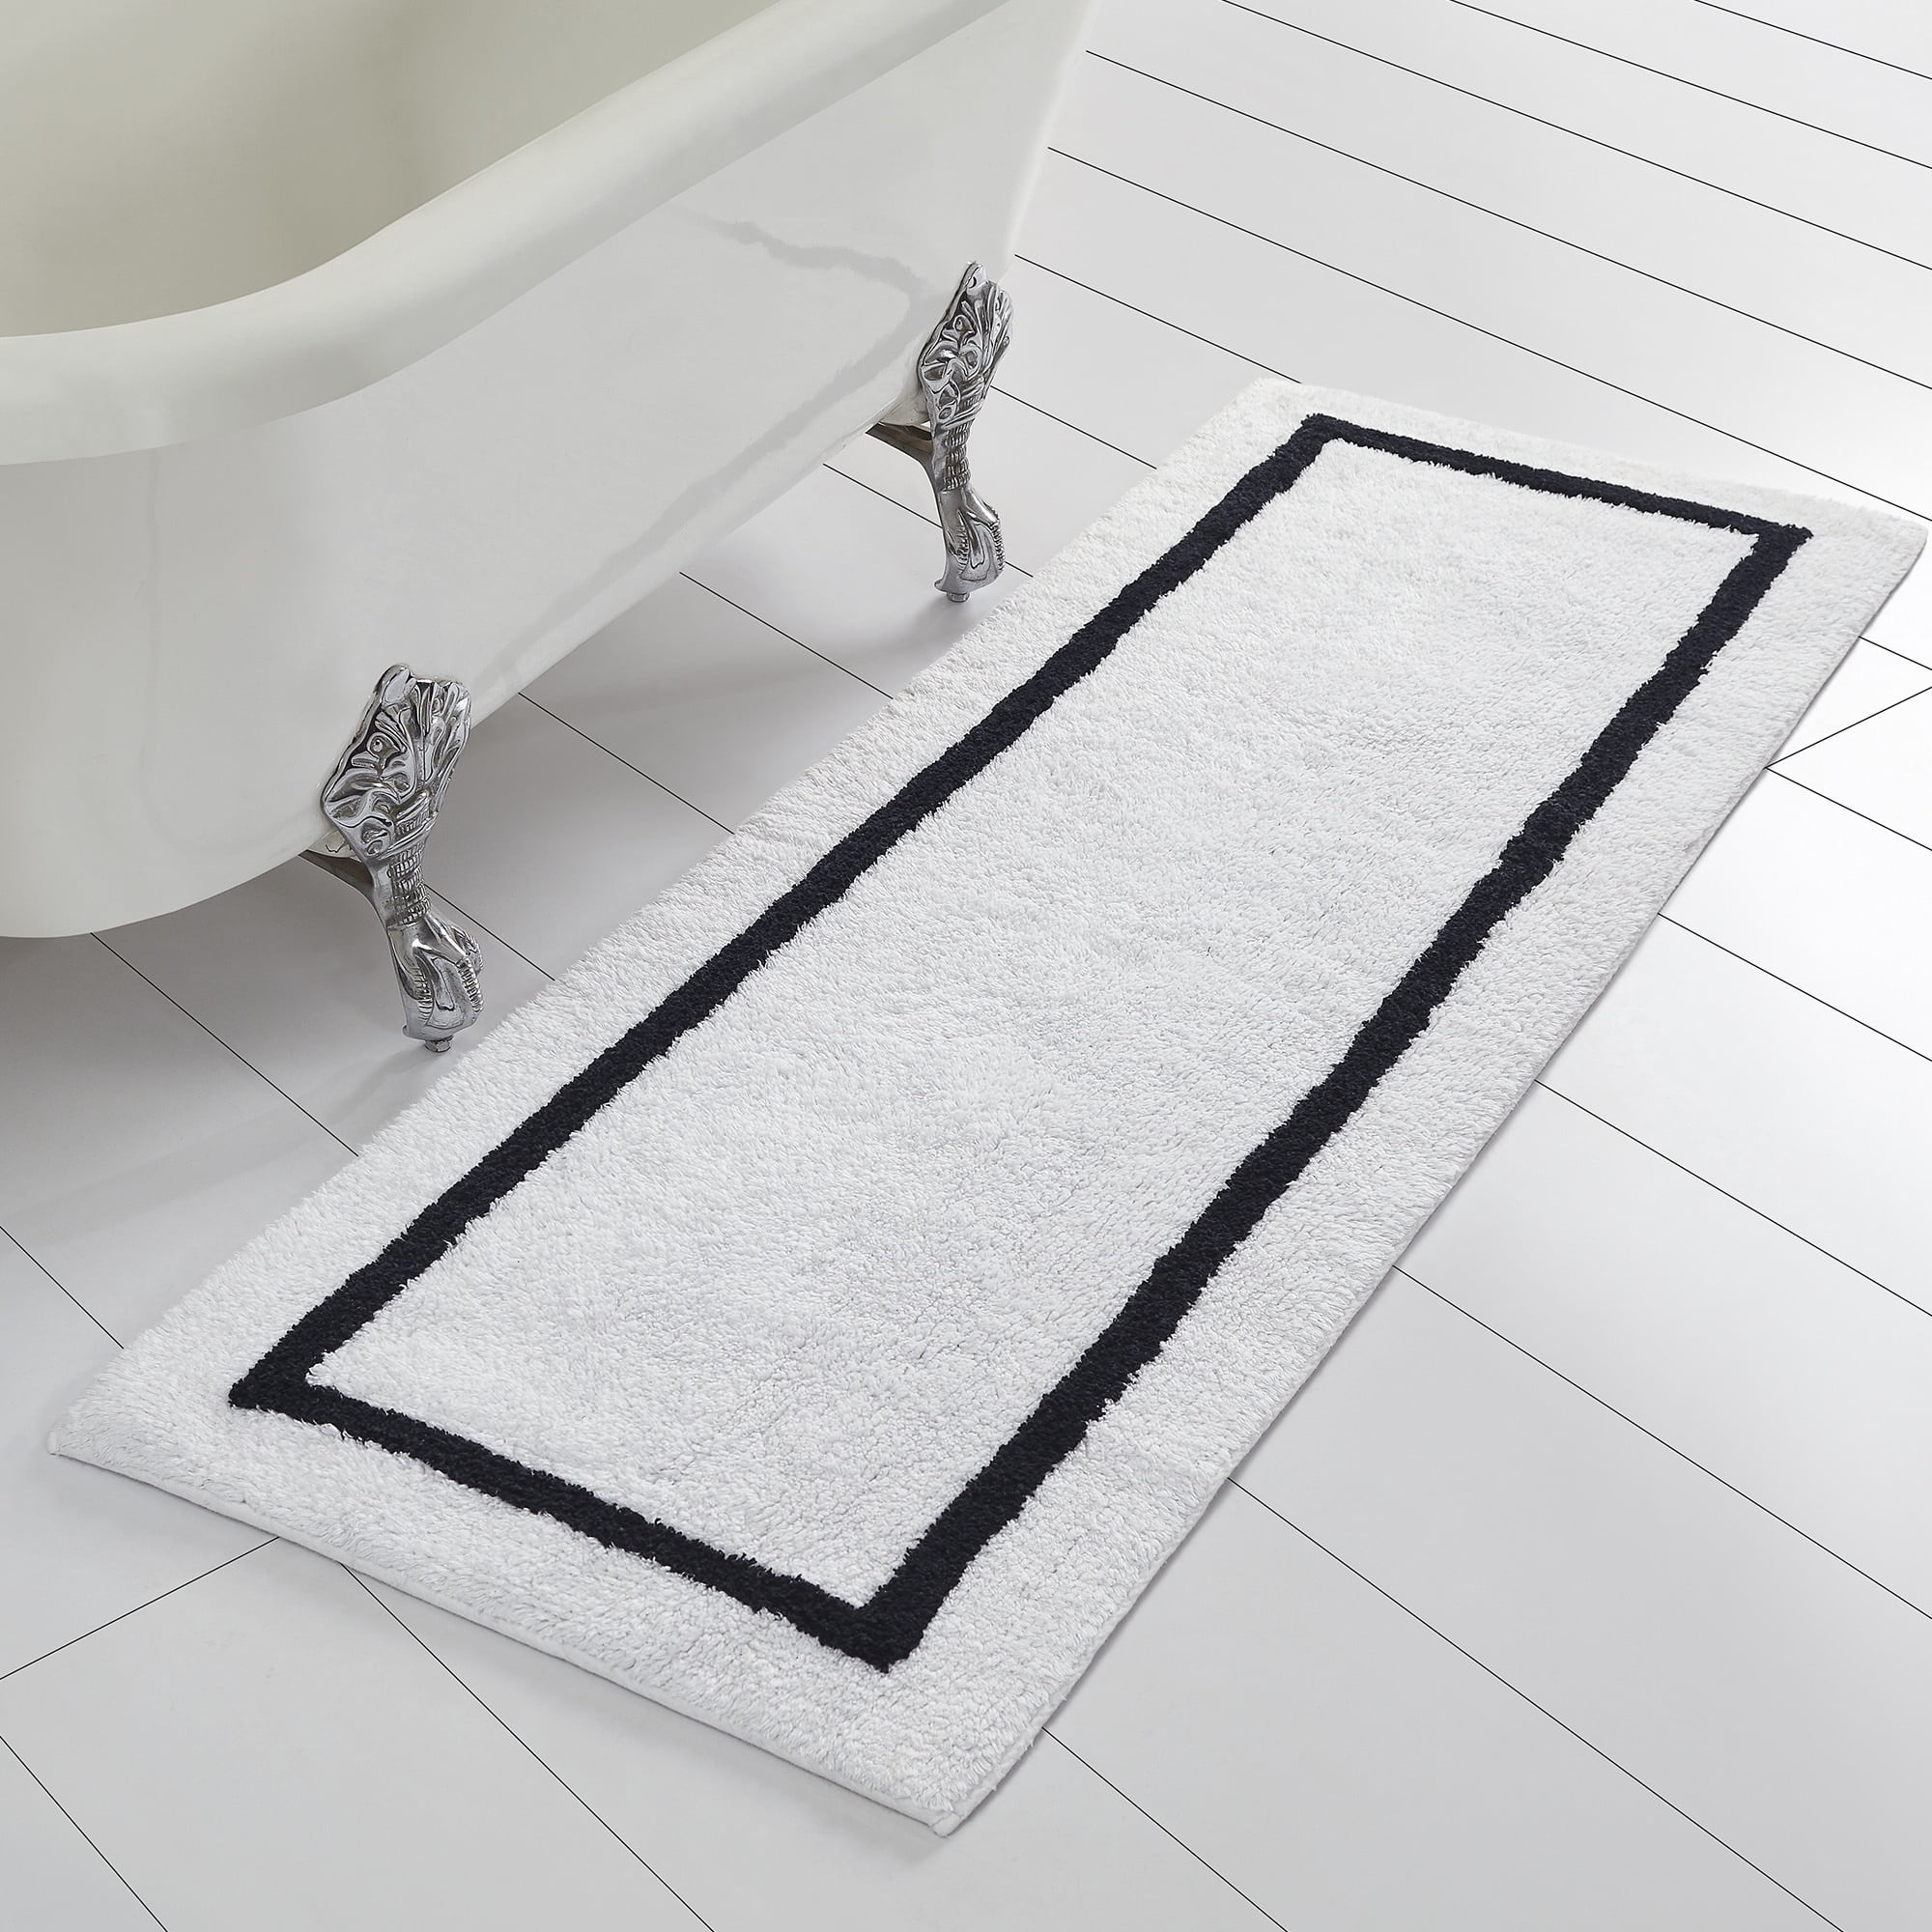 Bath Runner Rug 2 x 5 ft White Reversible Long Cotton Bathroom Floor Mat 